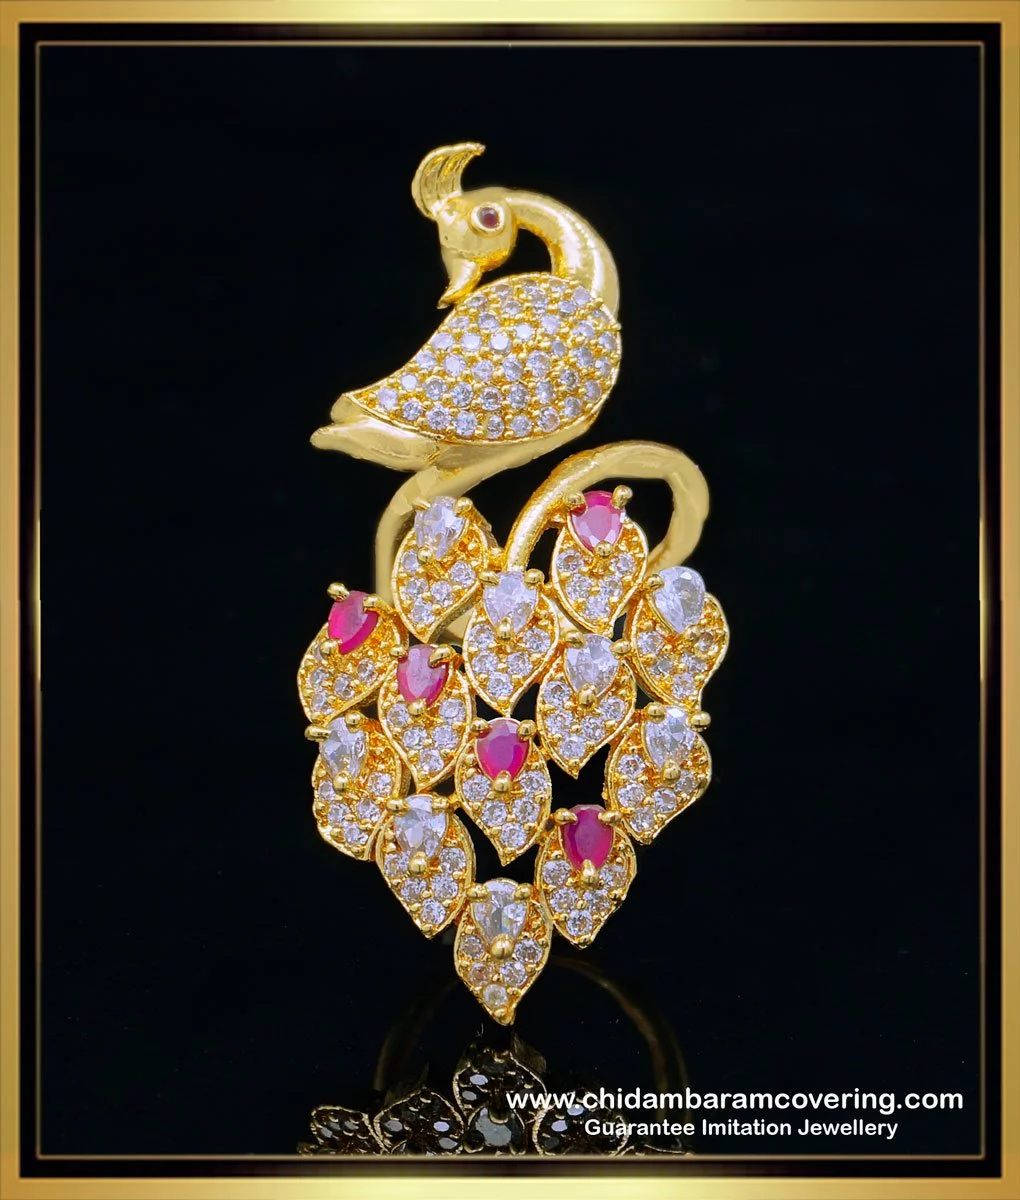 Buy quality 22K Gold Navratna Diamond Peacock Design Ring in Ahmedabad